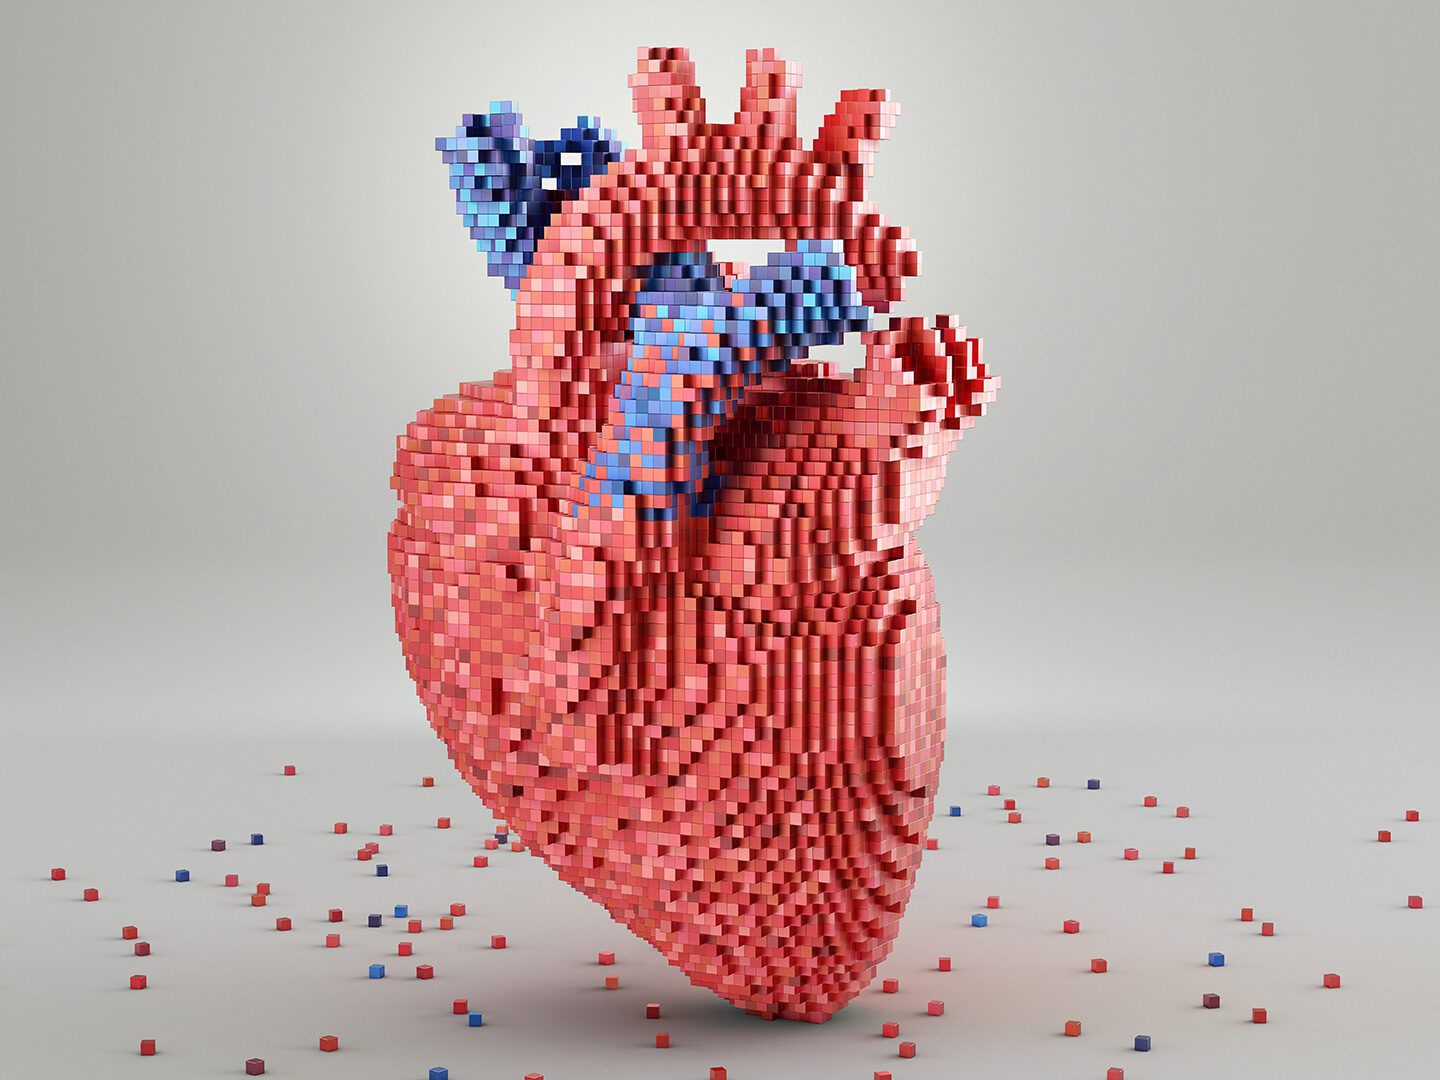 das Modell eines Herzes aus kleinen Bausteinen